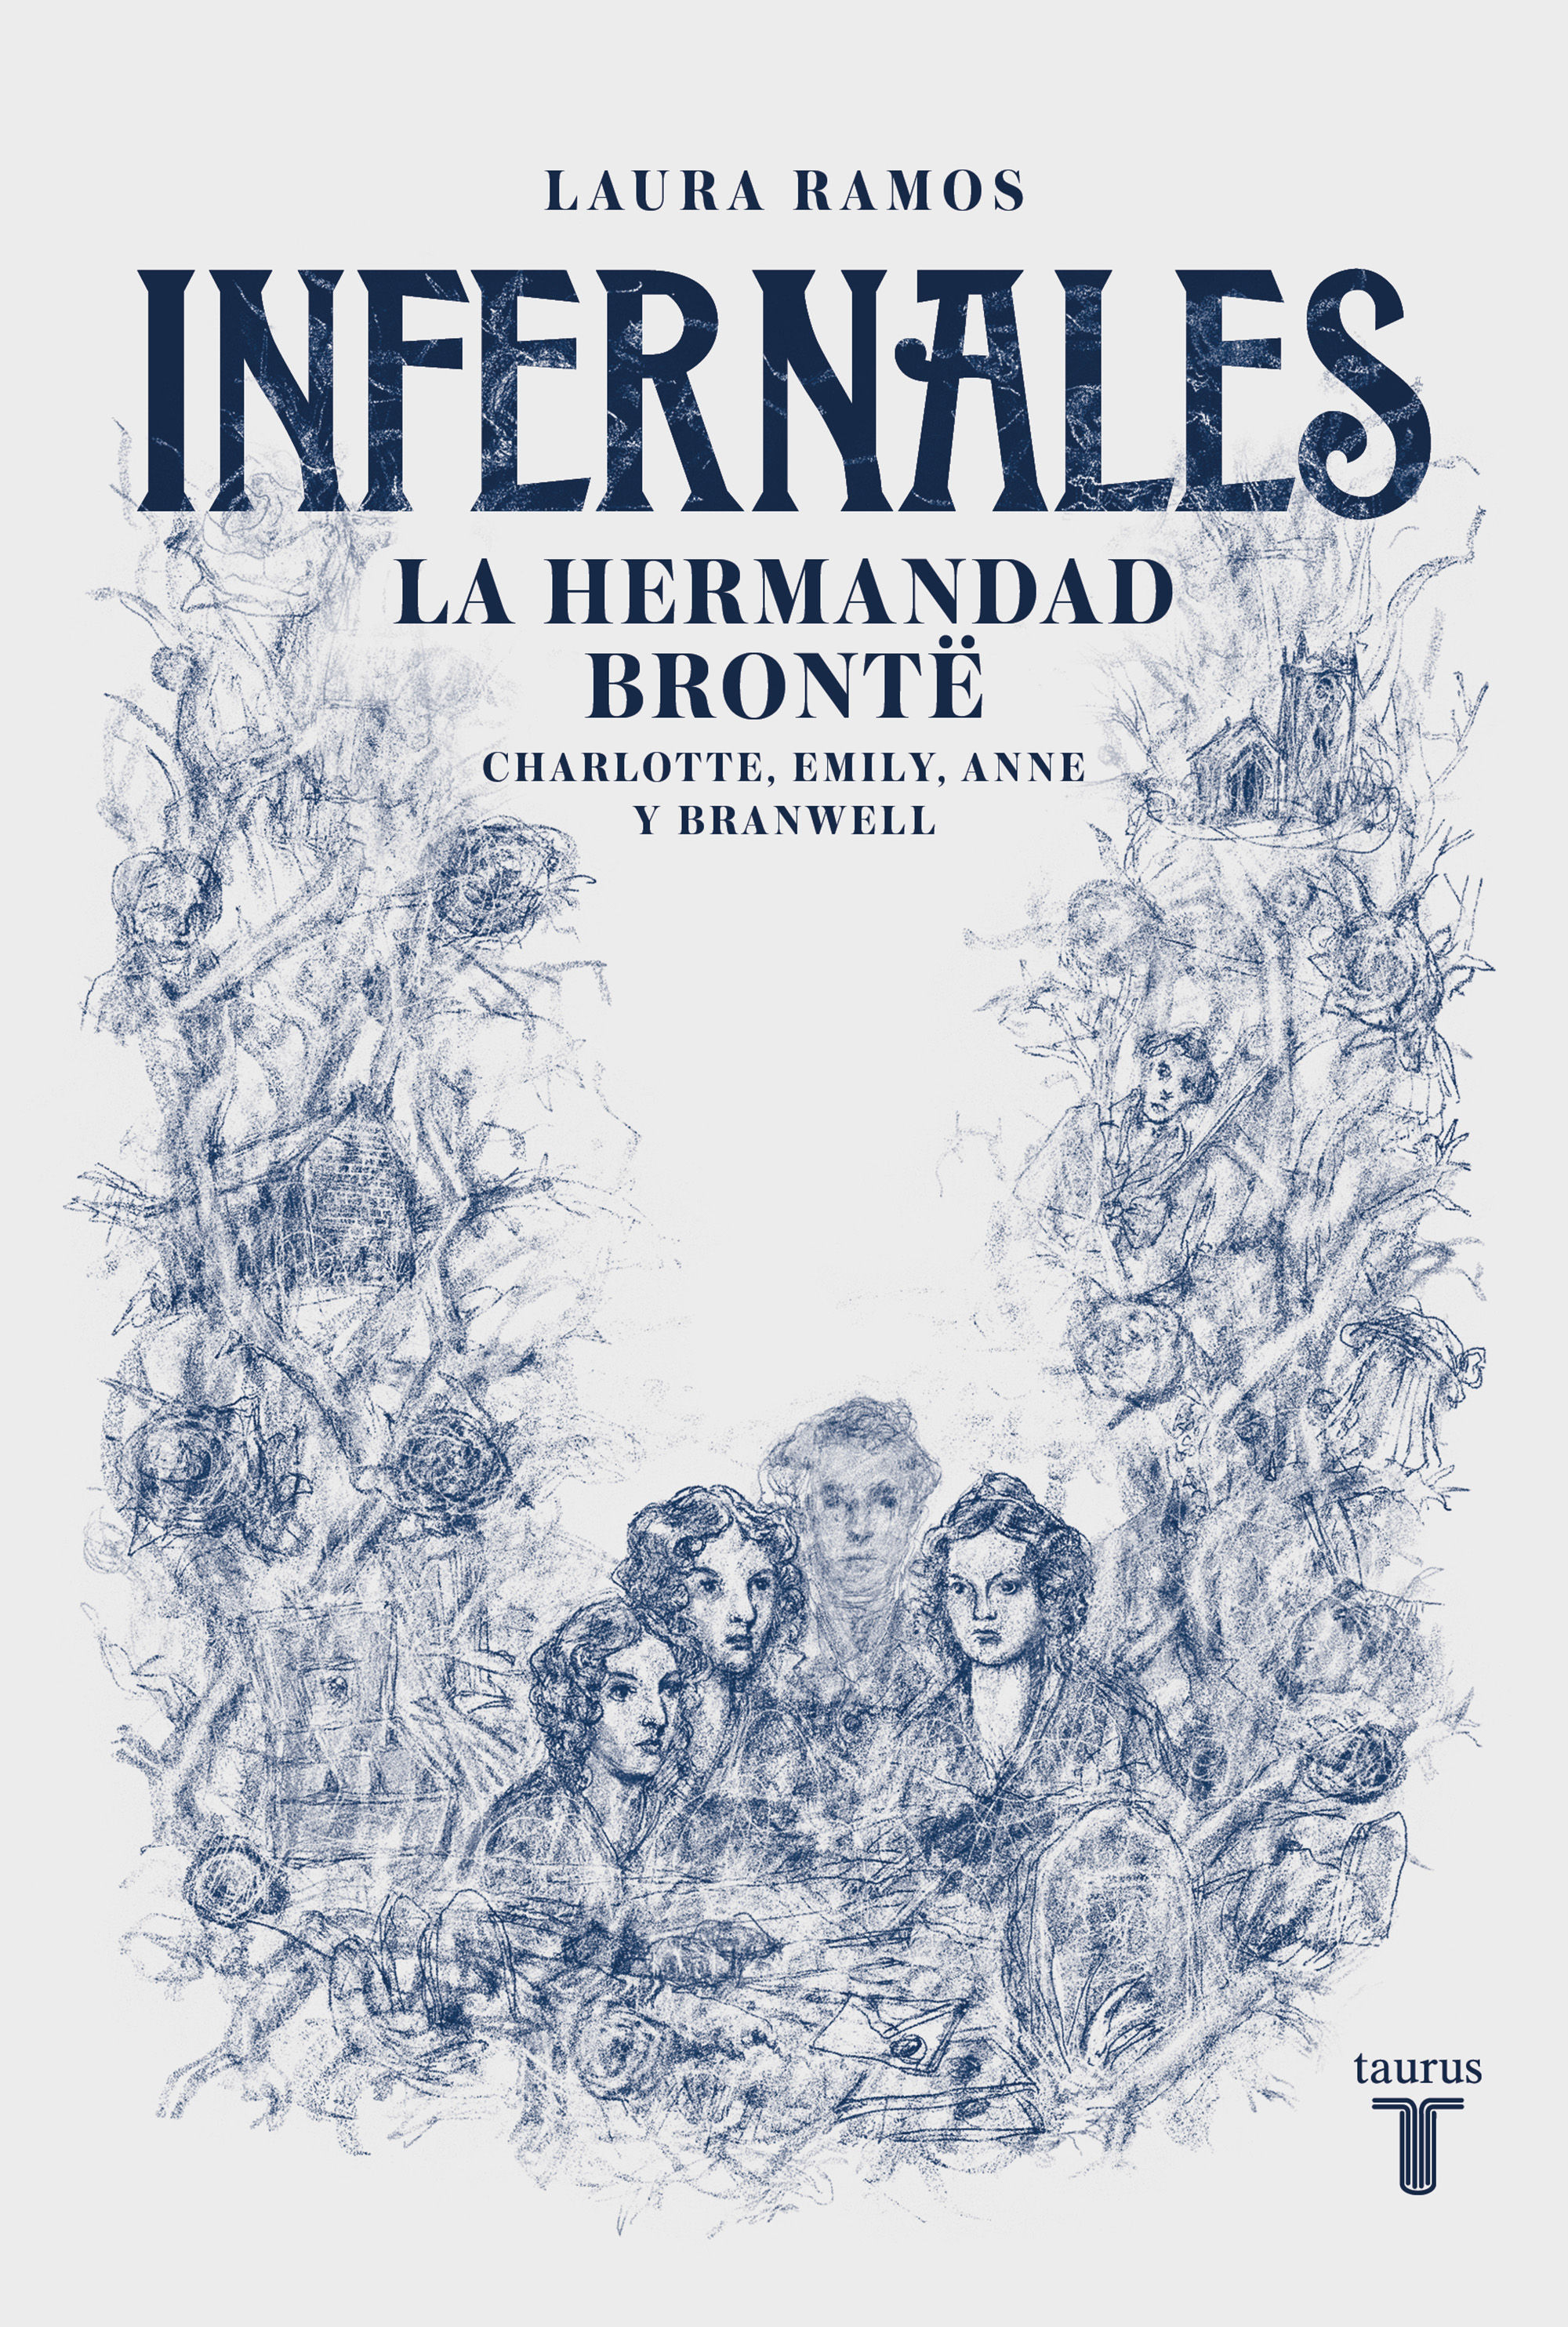 INFERNALES. LA HERMANDAD BRONTË: CHARLOTTE, EMILY, ANNE Y BRANWELL